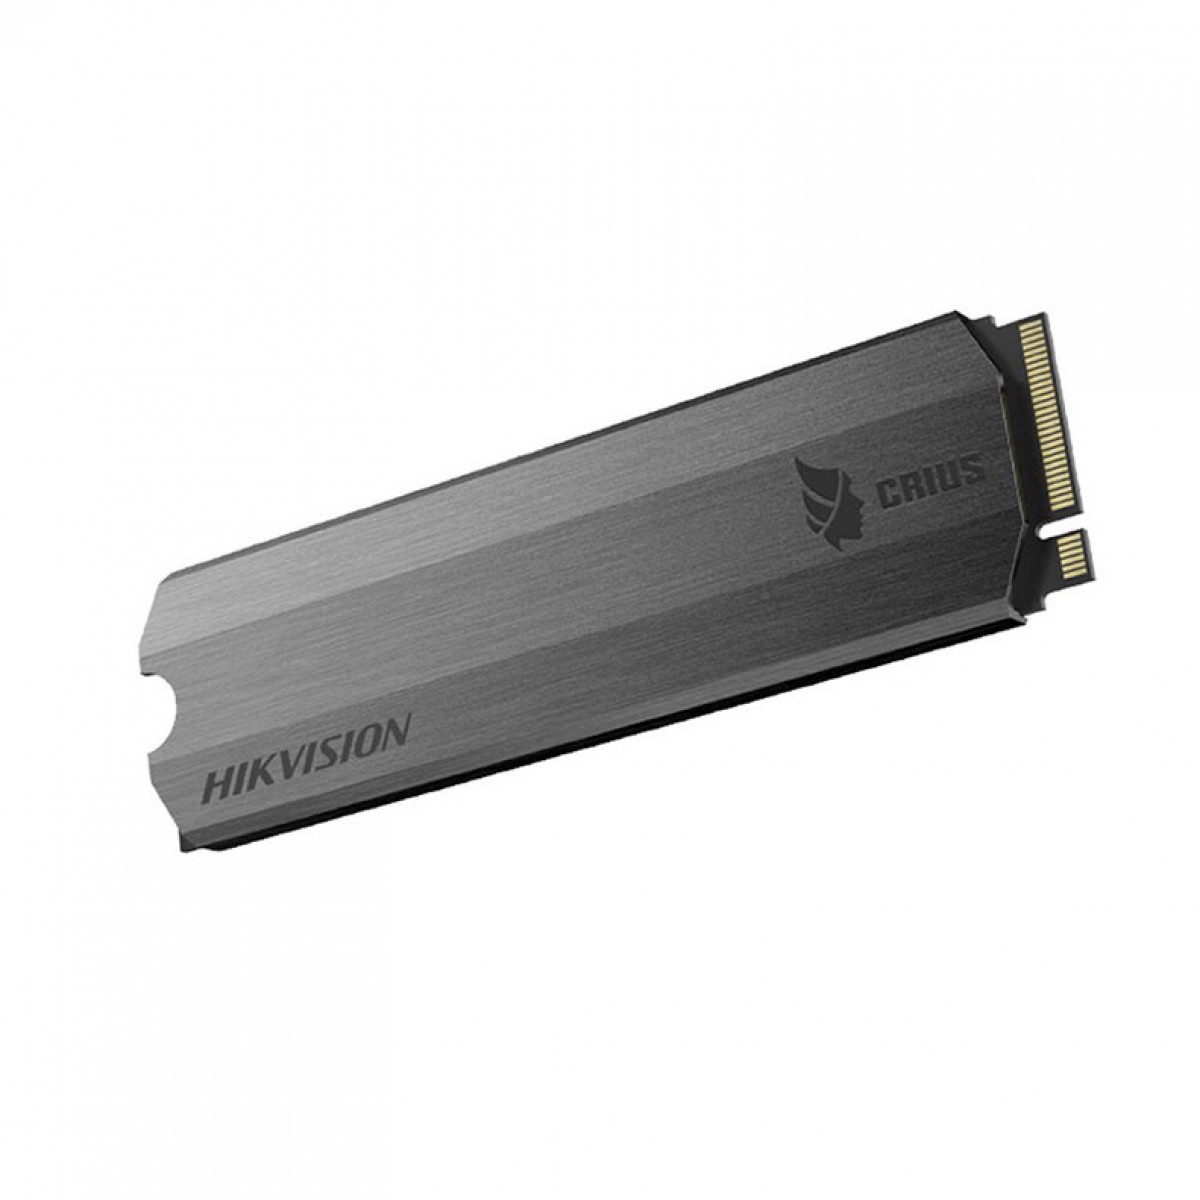 SSD Hikvision E-2000 512GB, M.2 NVME, Leitura 3300MBs e Gravação 2100MBs, HS-SSD-E2000-512GB